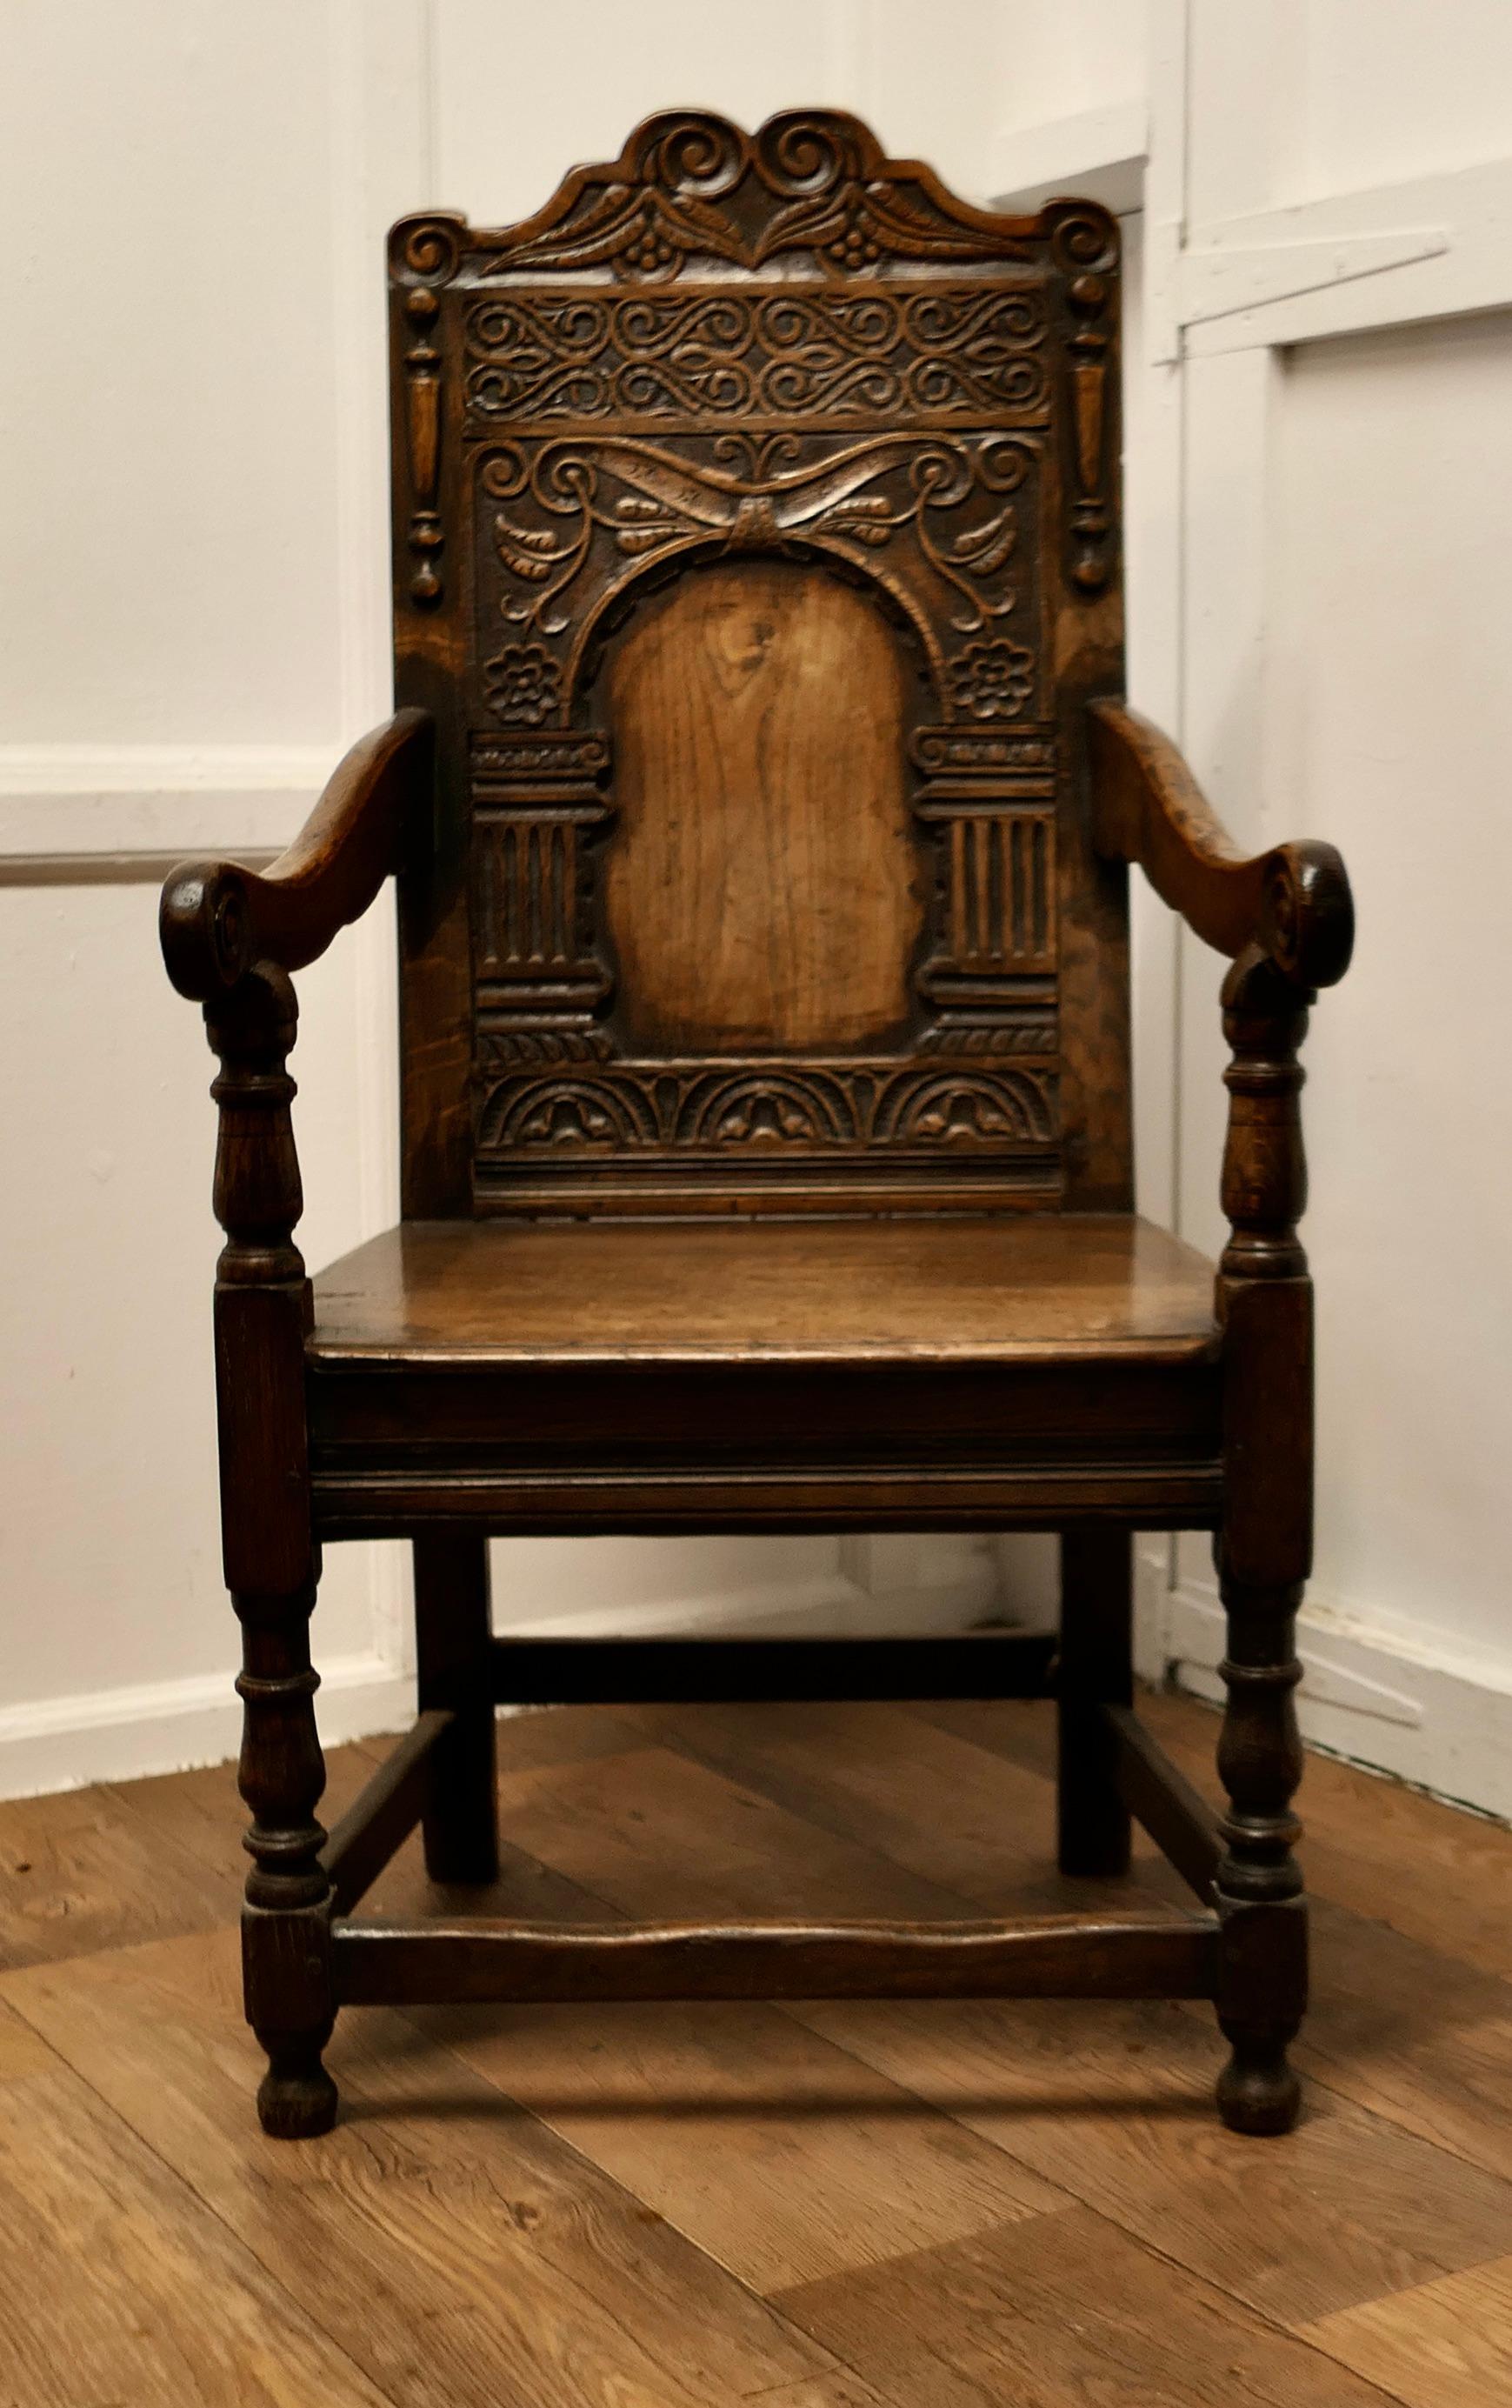 18. Jahrhundert Eiche geschnitzt Celtic Wainscot Stuhl

Dieser hübsche Stuhl hat eine wunderbare Patina, er hat einen massiven Plankensitz, gedrechselte Beine und geschnitzte Armlehnen. Die dekorative, hohe Thronlehne ist tief geschnitzt mit den